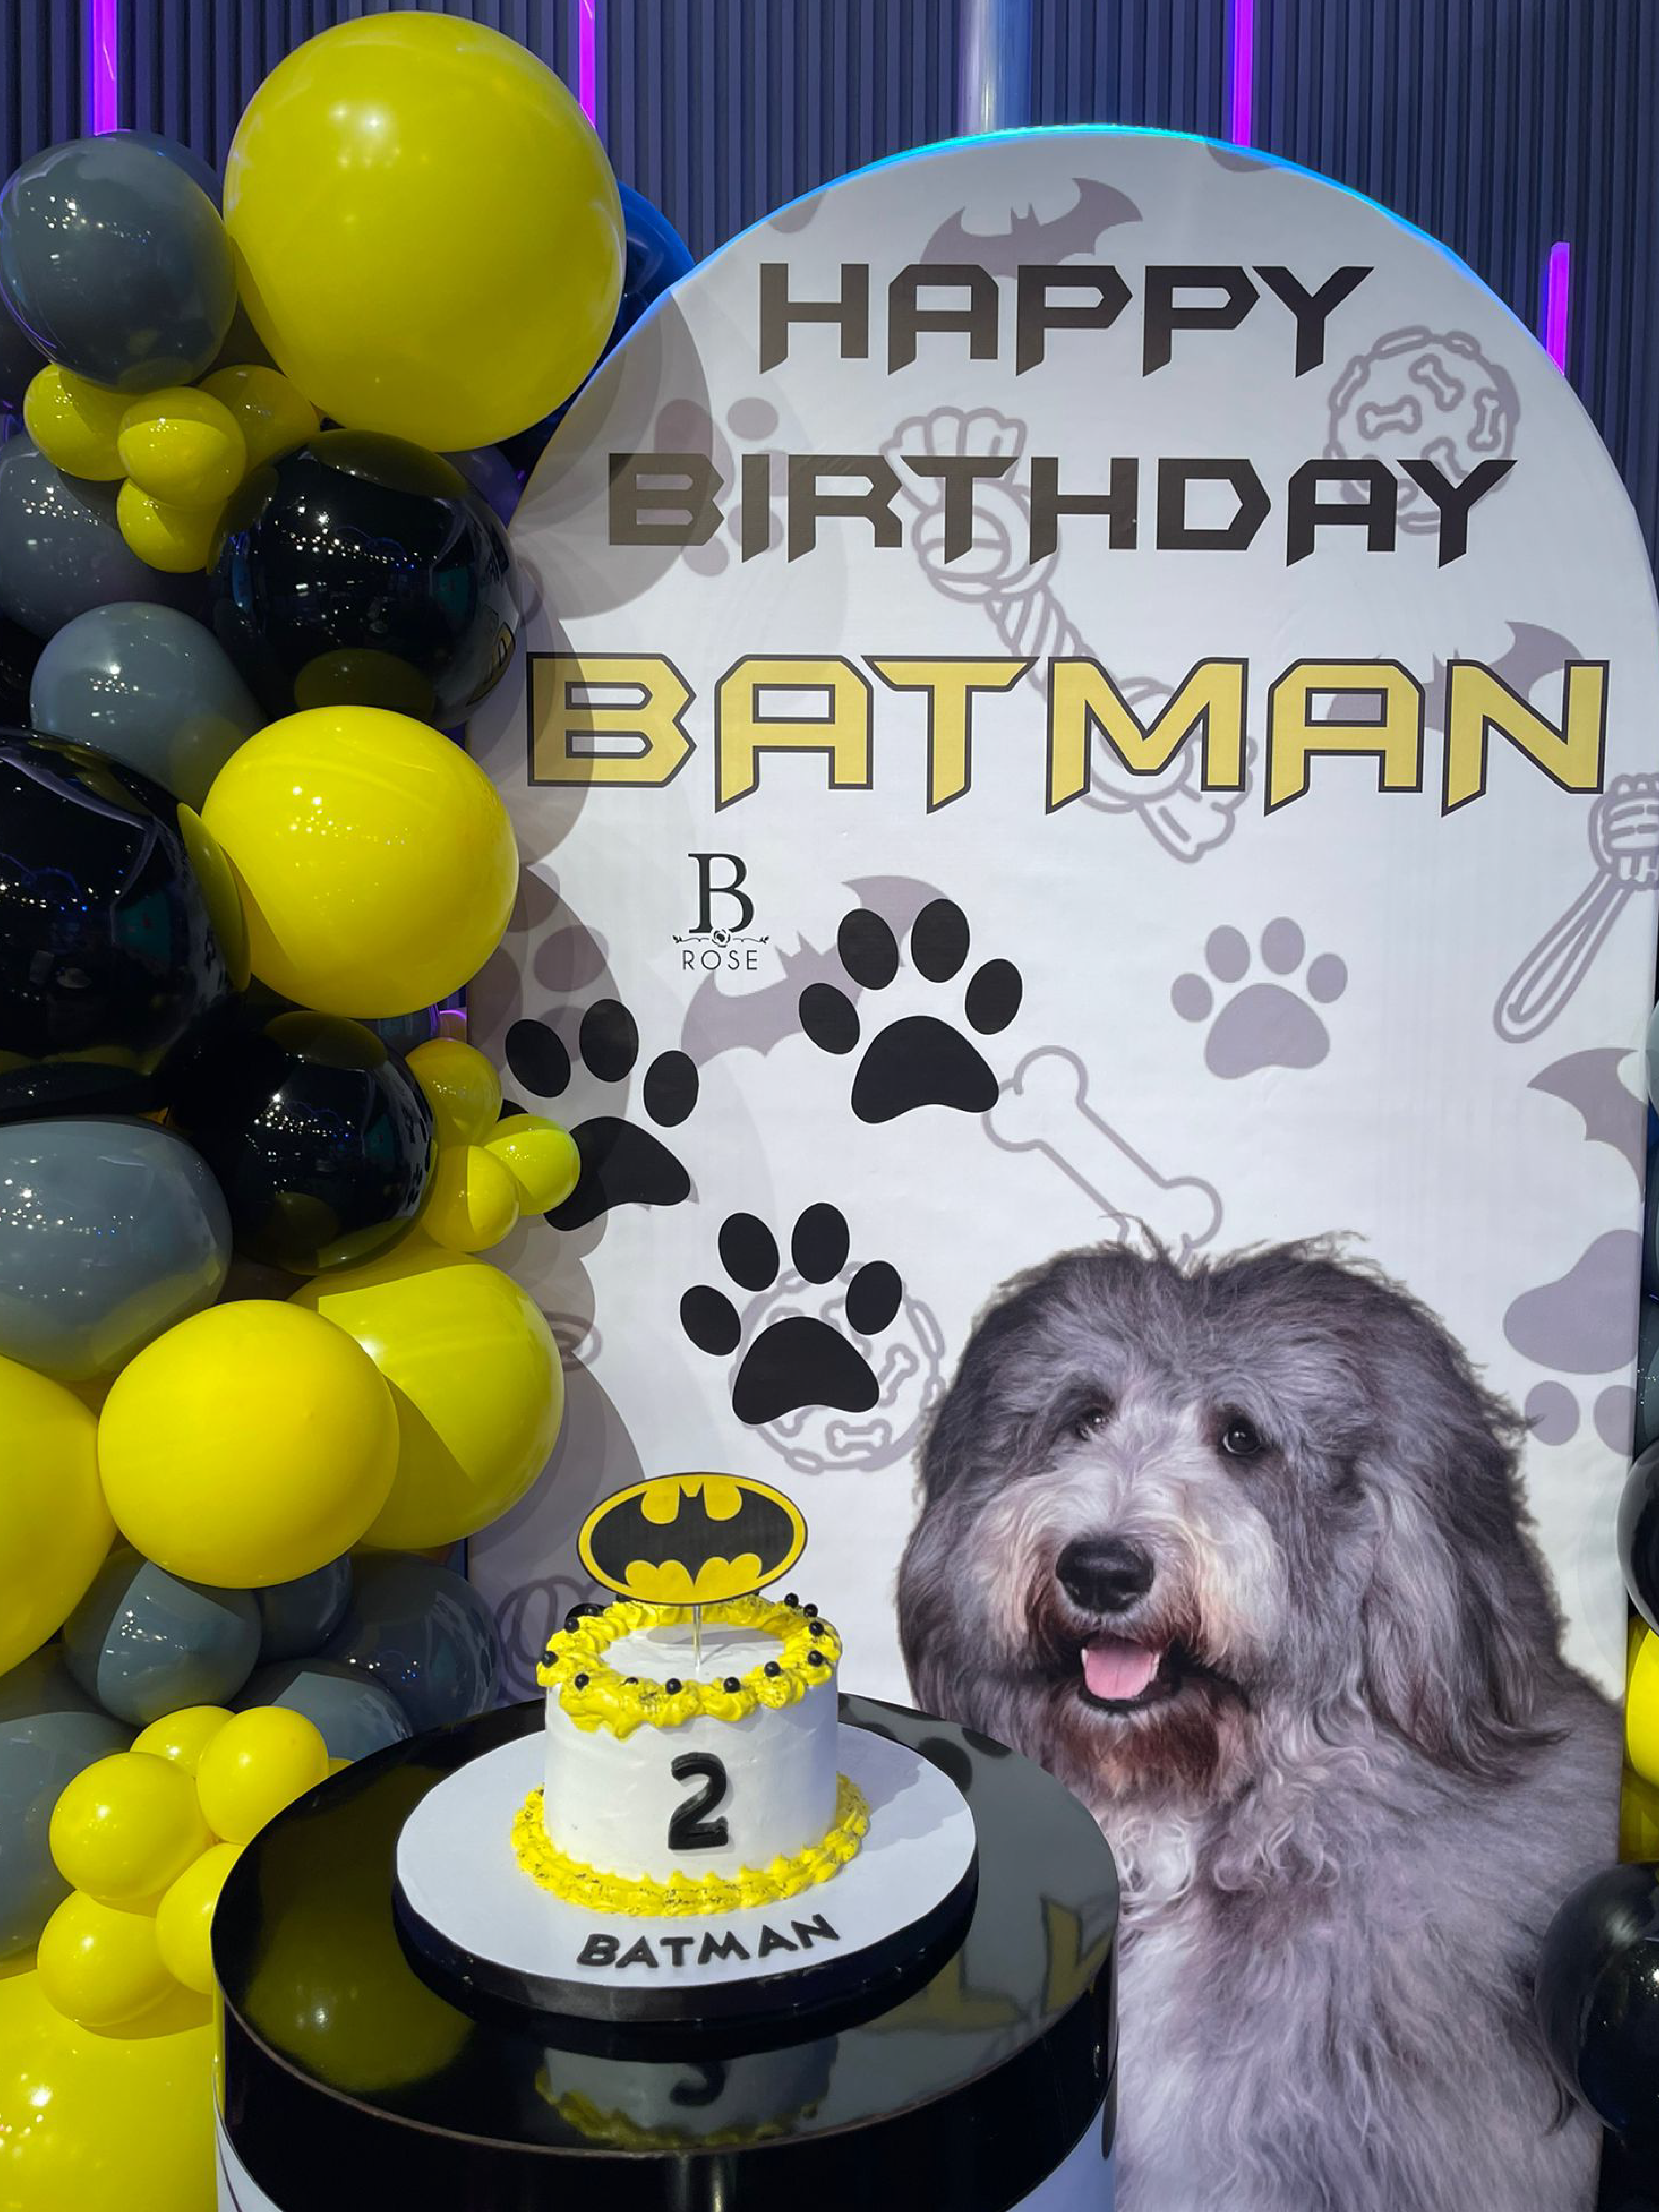 Batman's birthday - Sientese quien pueda